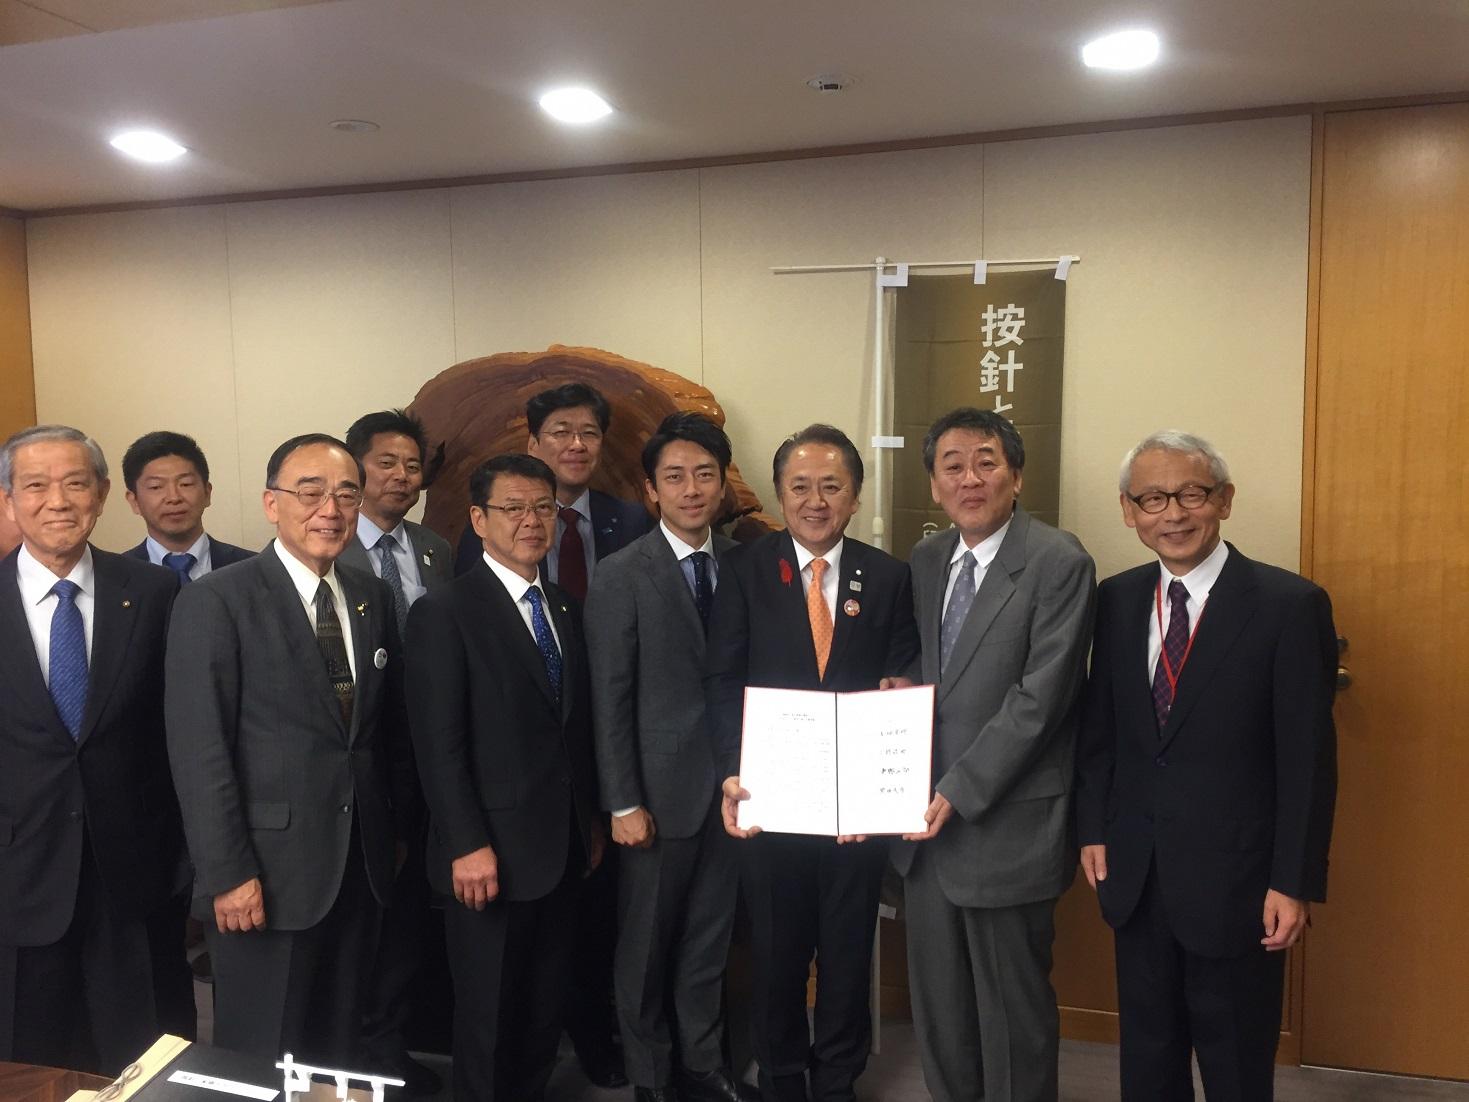 NHKに要望書を提出したANJINプロジェクト連絡協議会の皆さんとの写真